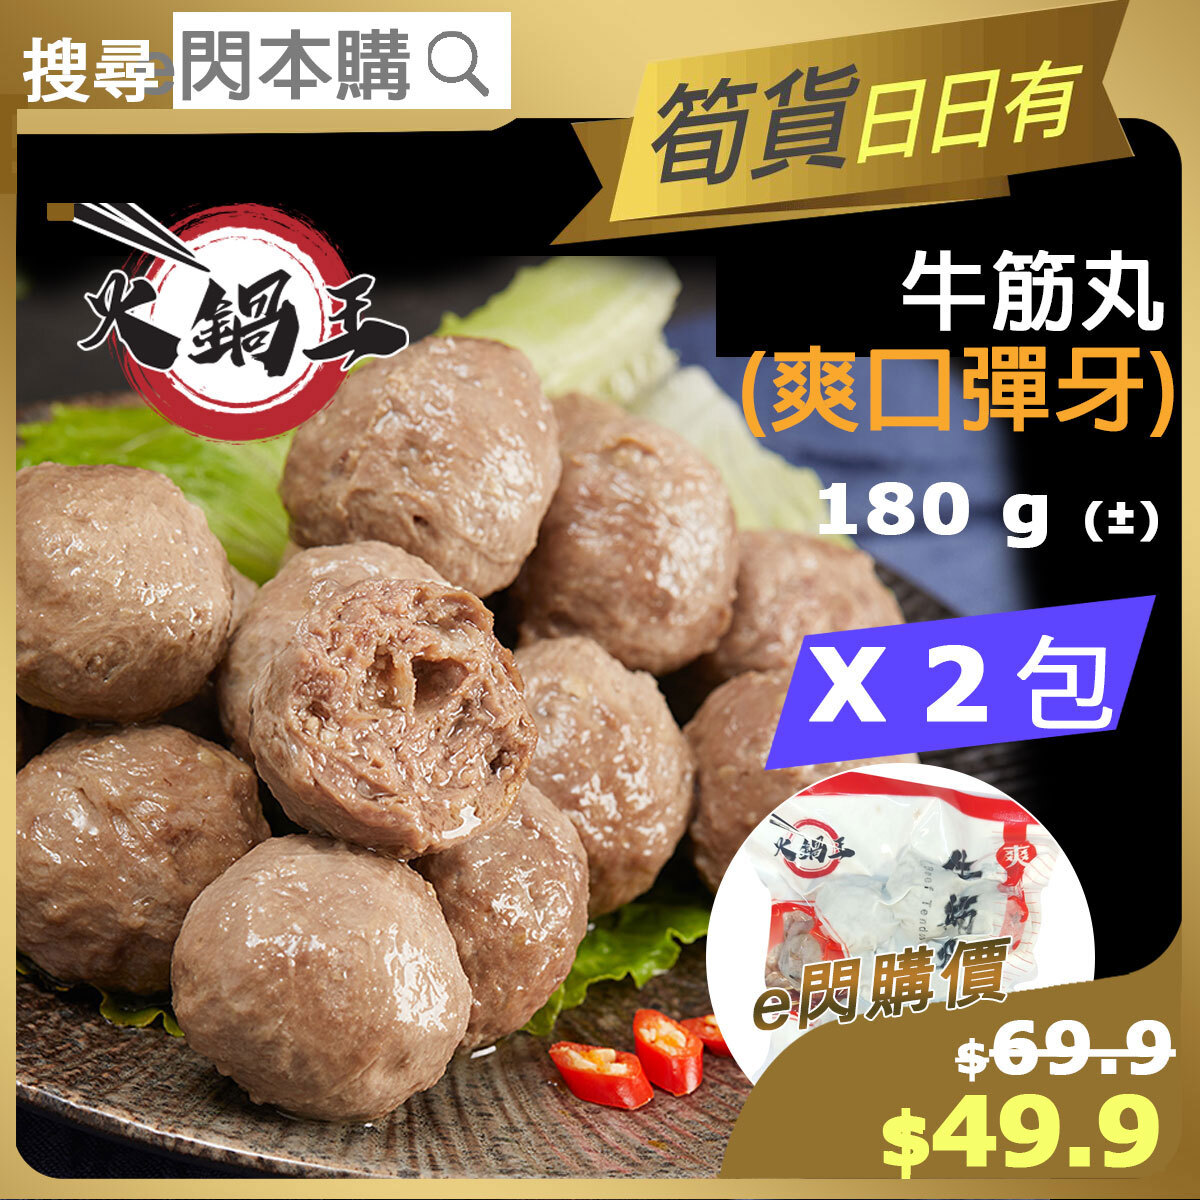 [丸] · ❤️eFlash❤️ Hot Pot King Beef Tendon (180g± ❎ 2 筋丸) New old package sent randomly (-18ºC)